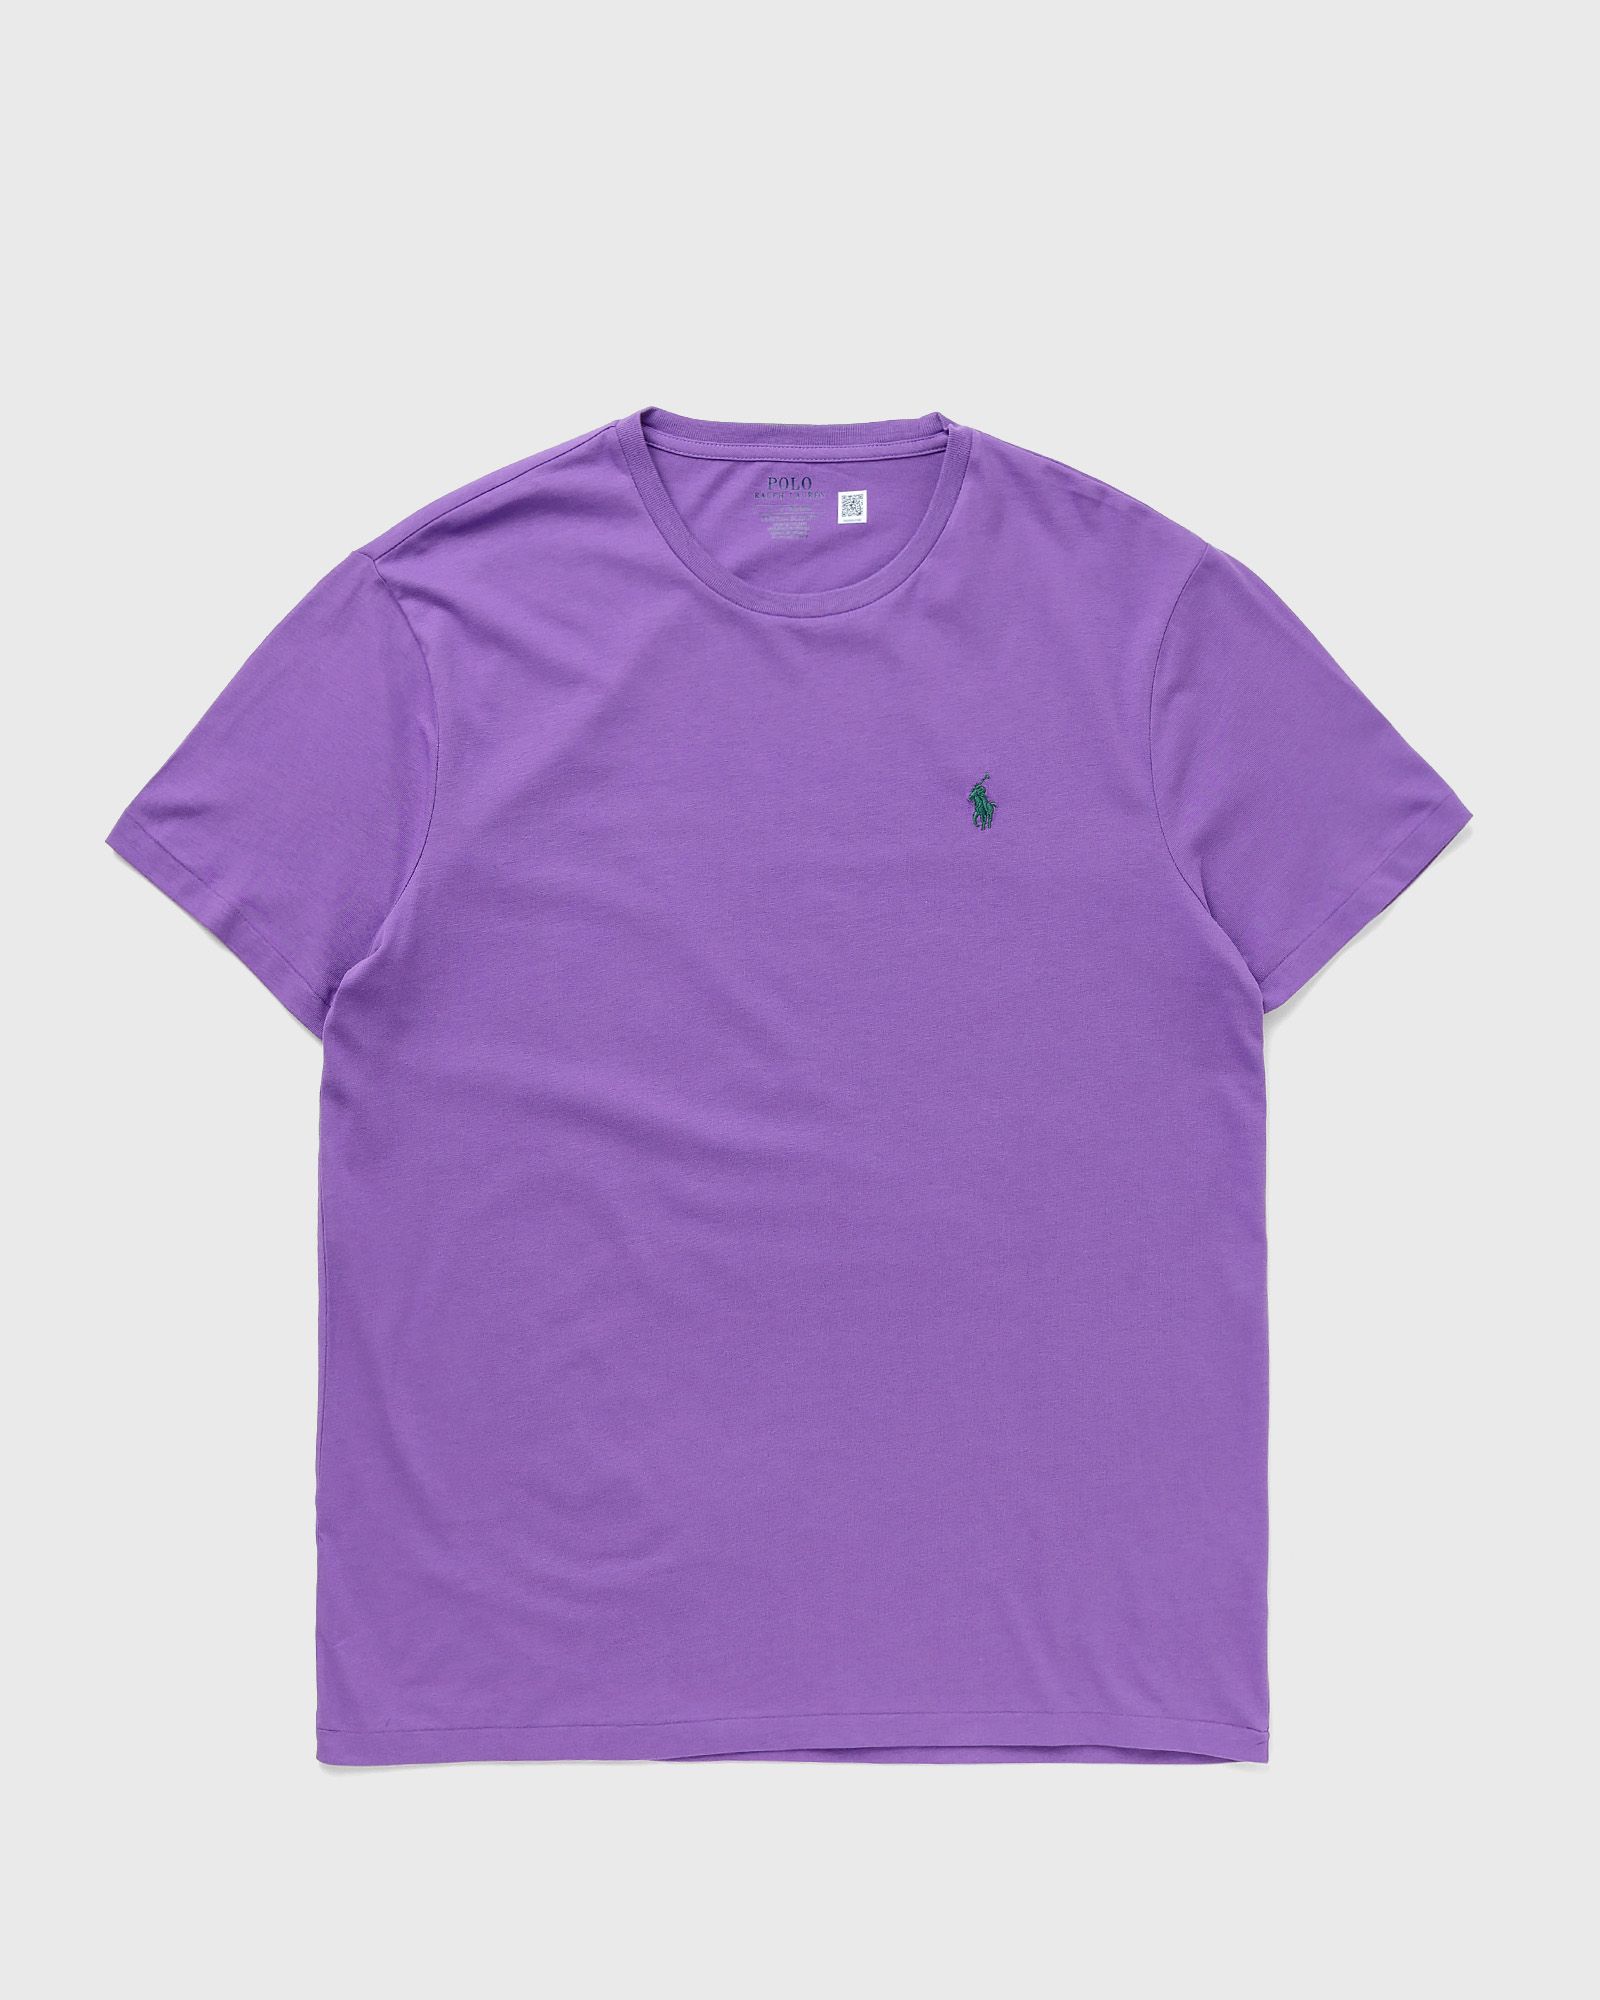 Polo Ralph Lauren - s/s tee men shortsleeves purple in größe:l